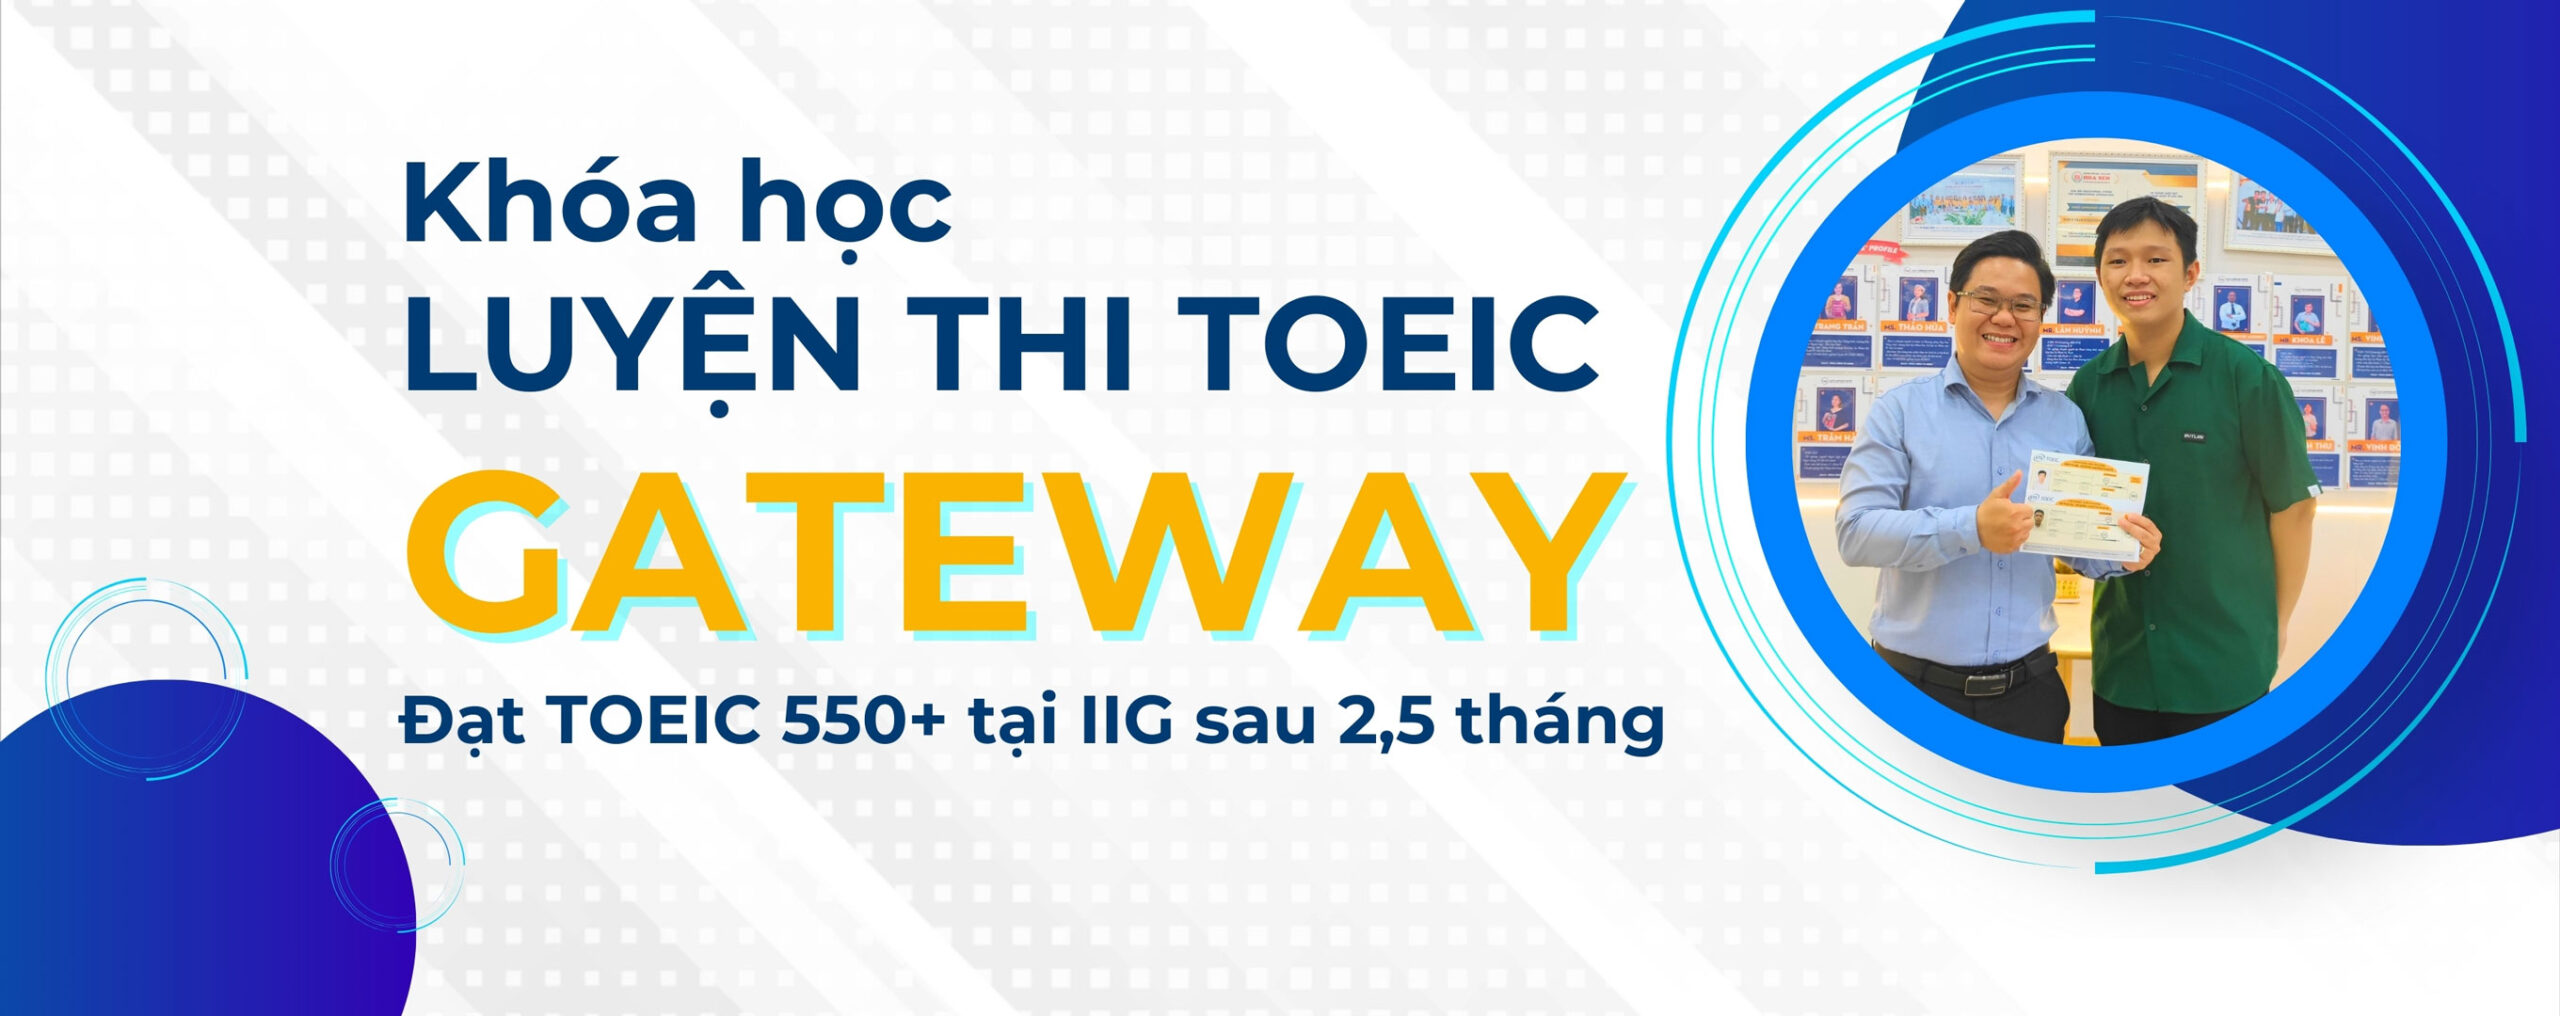 Khóa học luyện thi TOEIC Gateway cam kết TOEIC 550